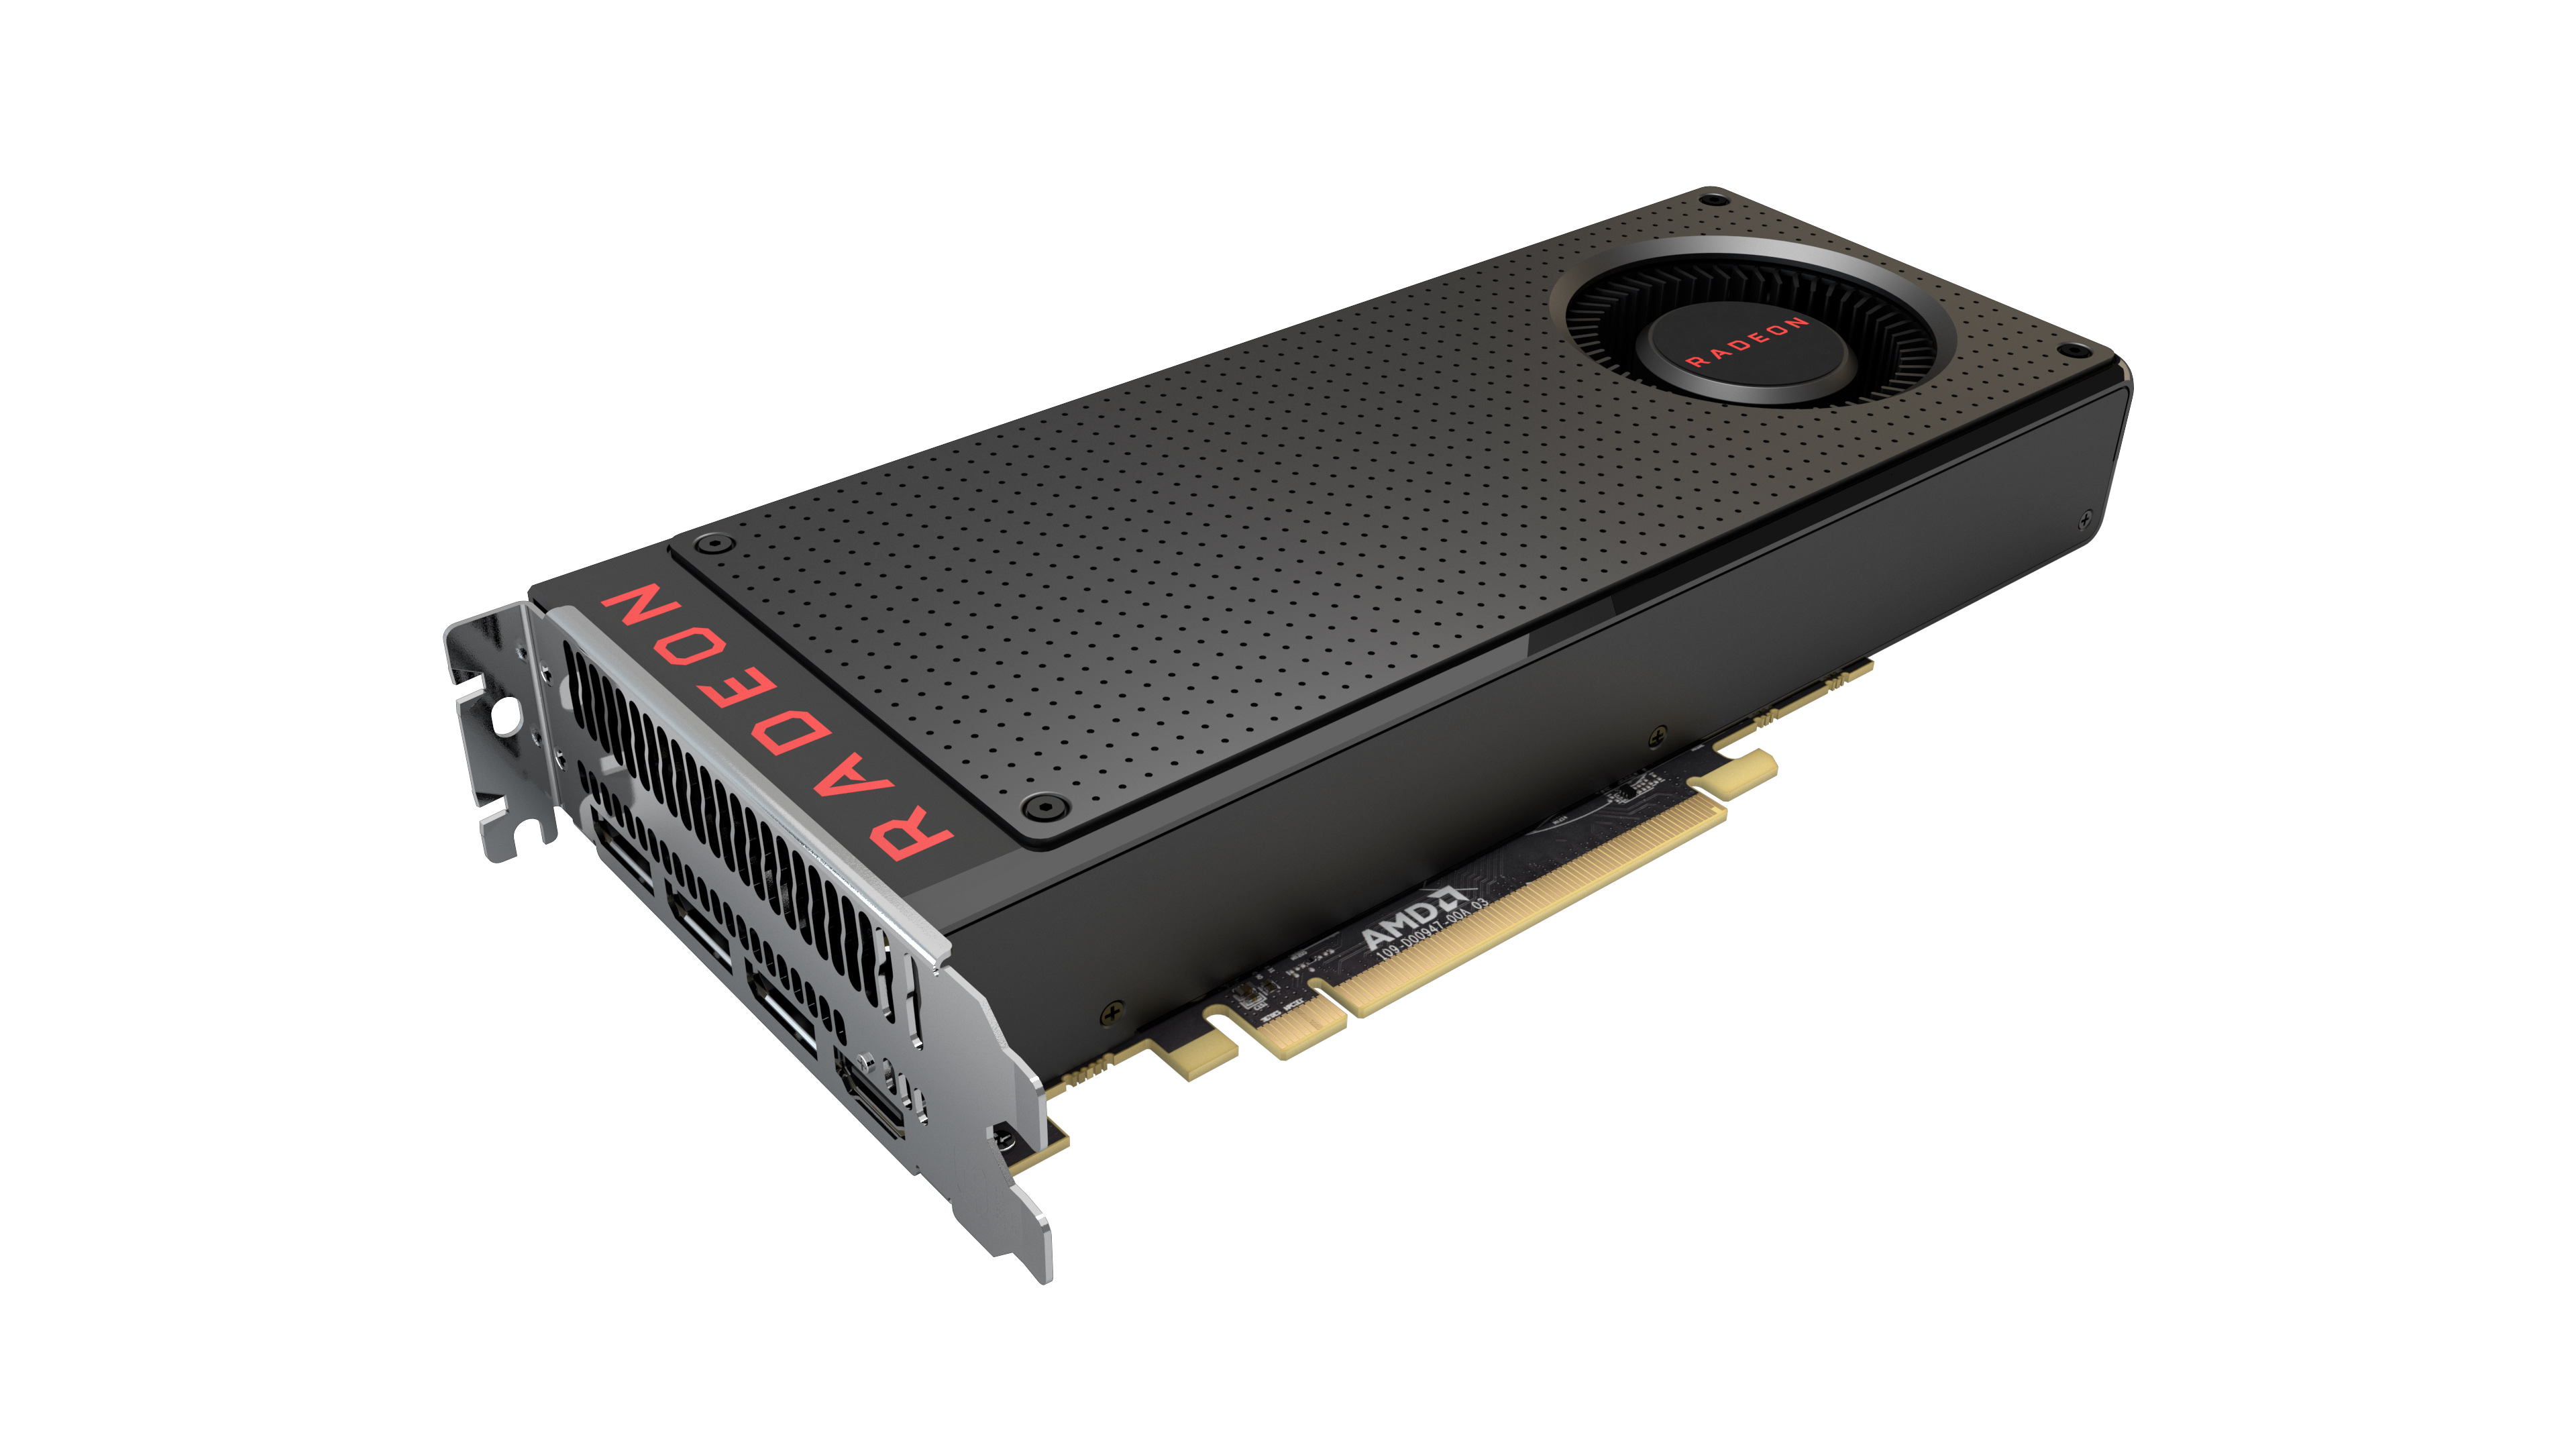 Immagine pubblicata in relazione al seguente contenuto: AMD annuncia la disponibilit commerciale della Radeon RX 480 8GB | Nome immagine: news24512_AMD-Radeon-RX-480_1.jpg